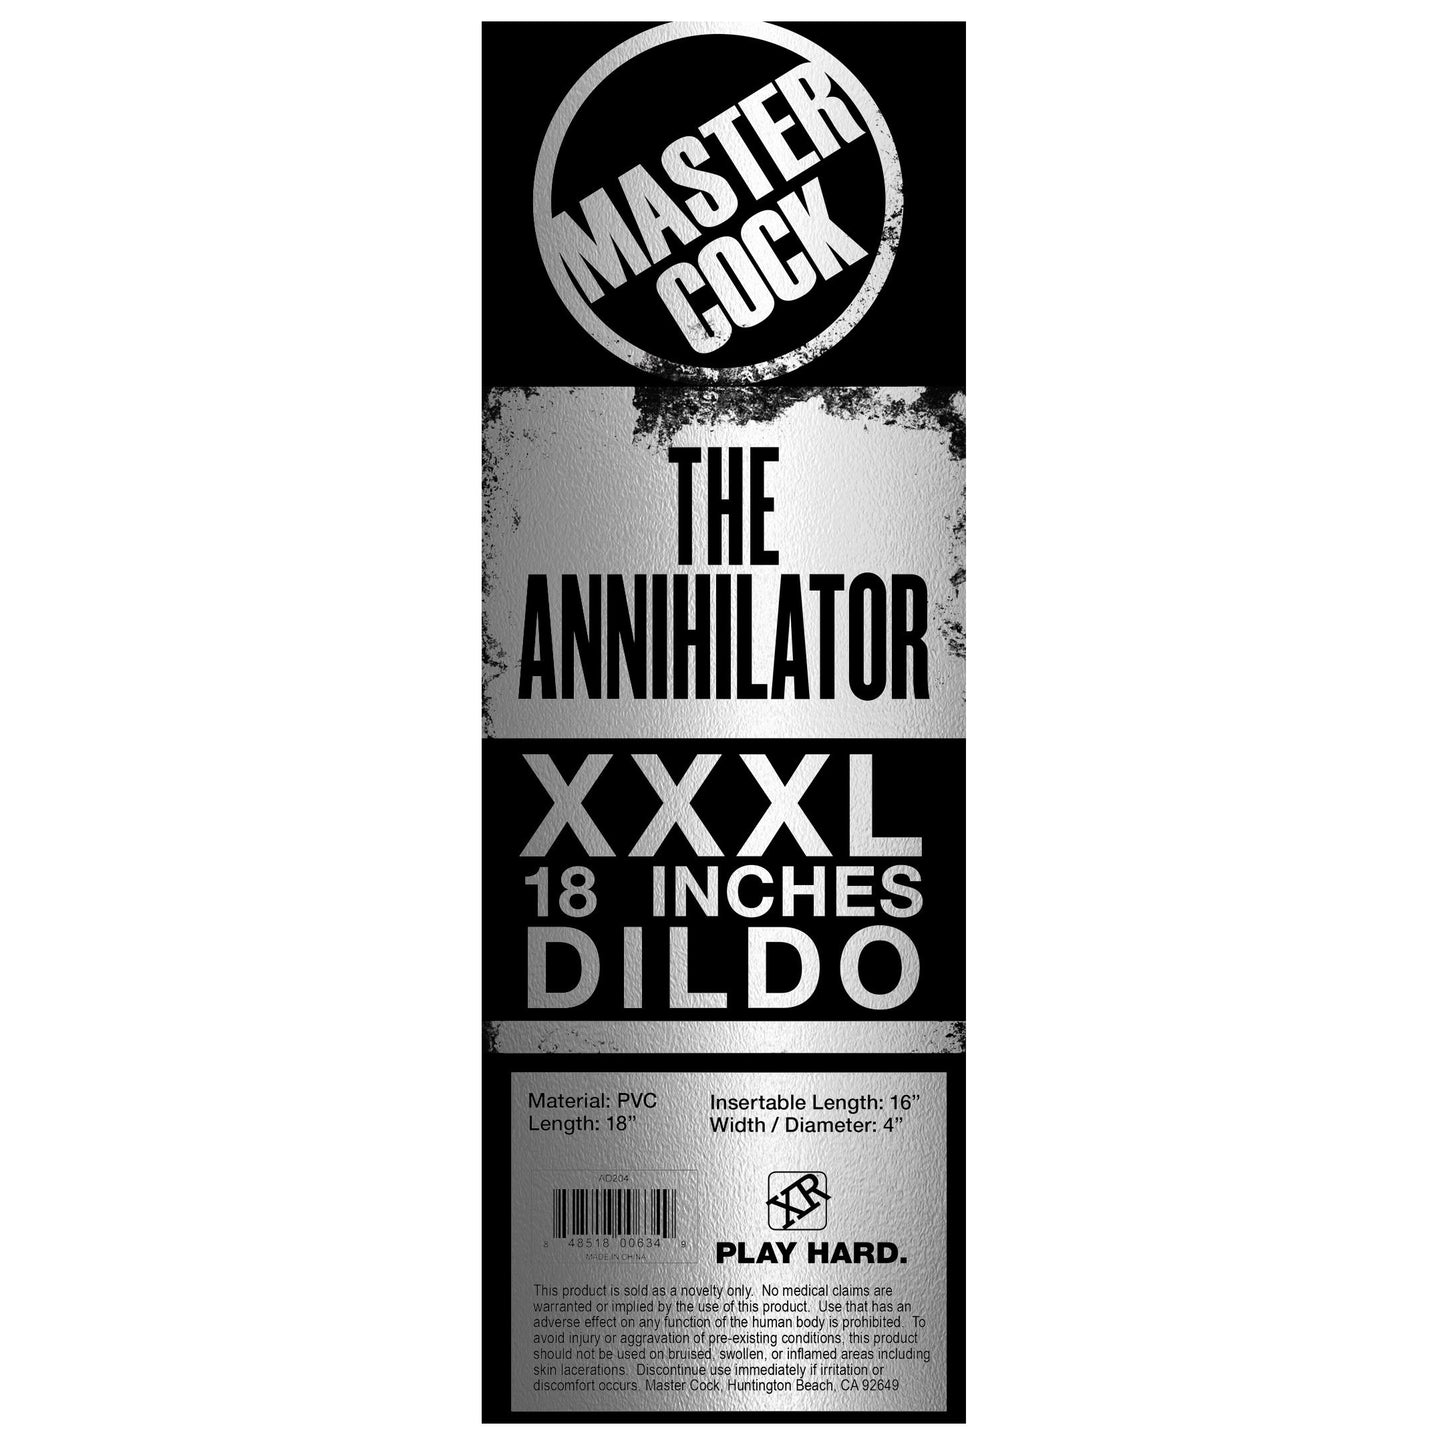 The Annihilator XXXL 18 Inch Dildo - UABDSM